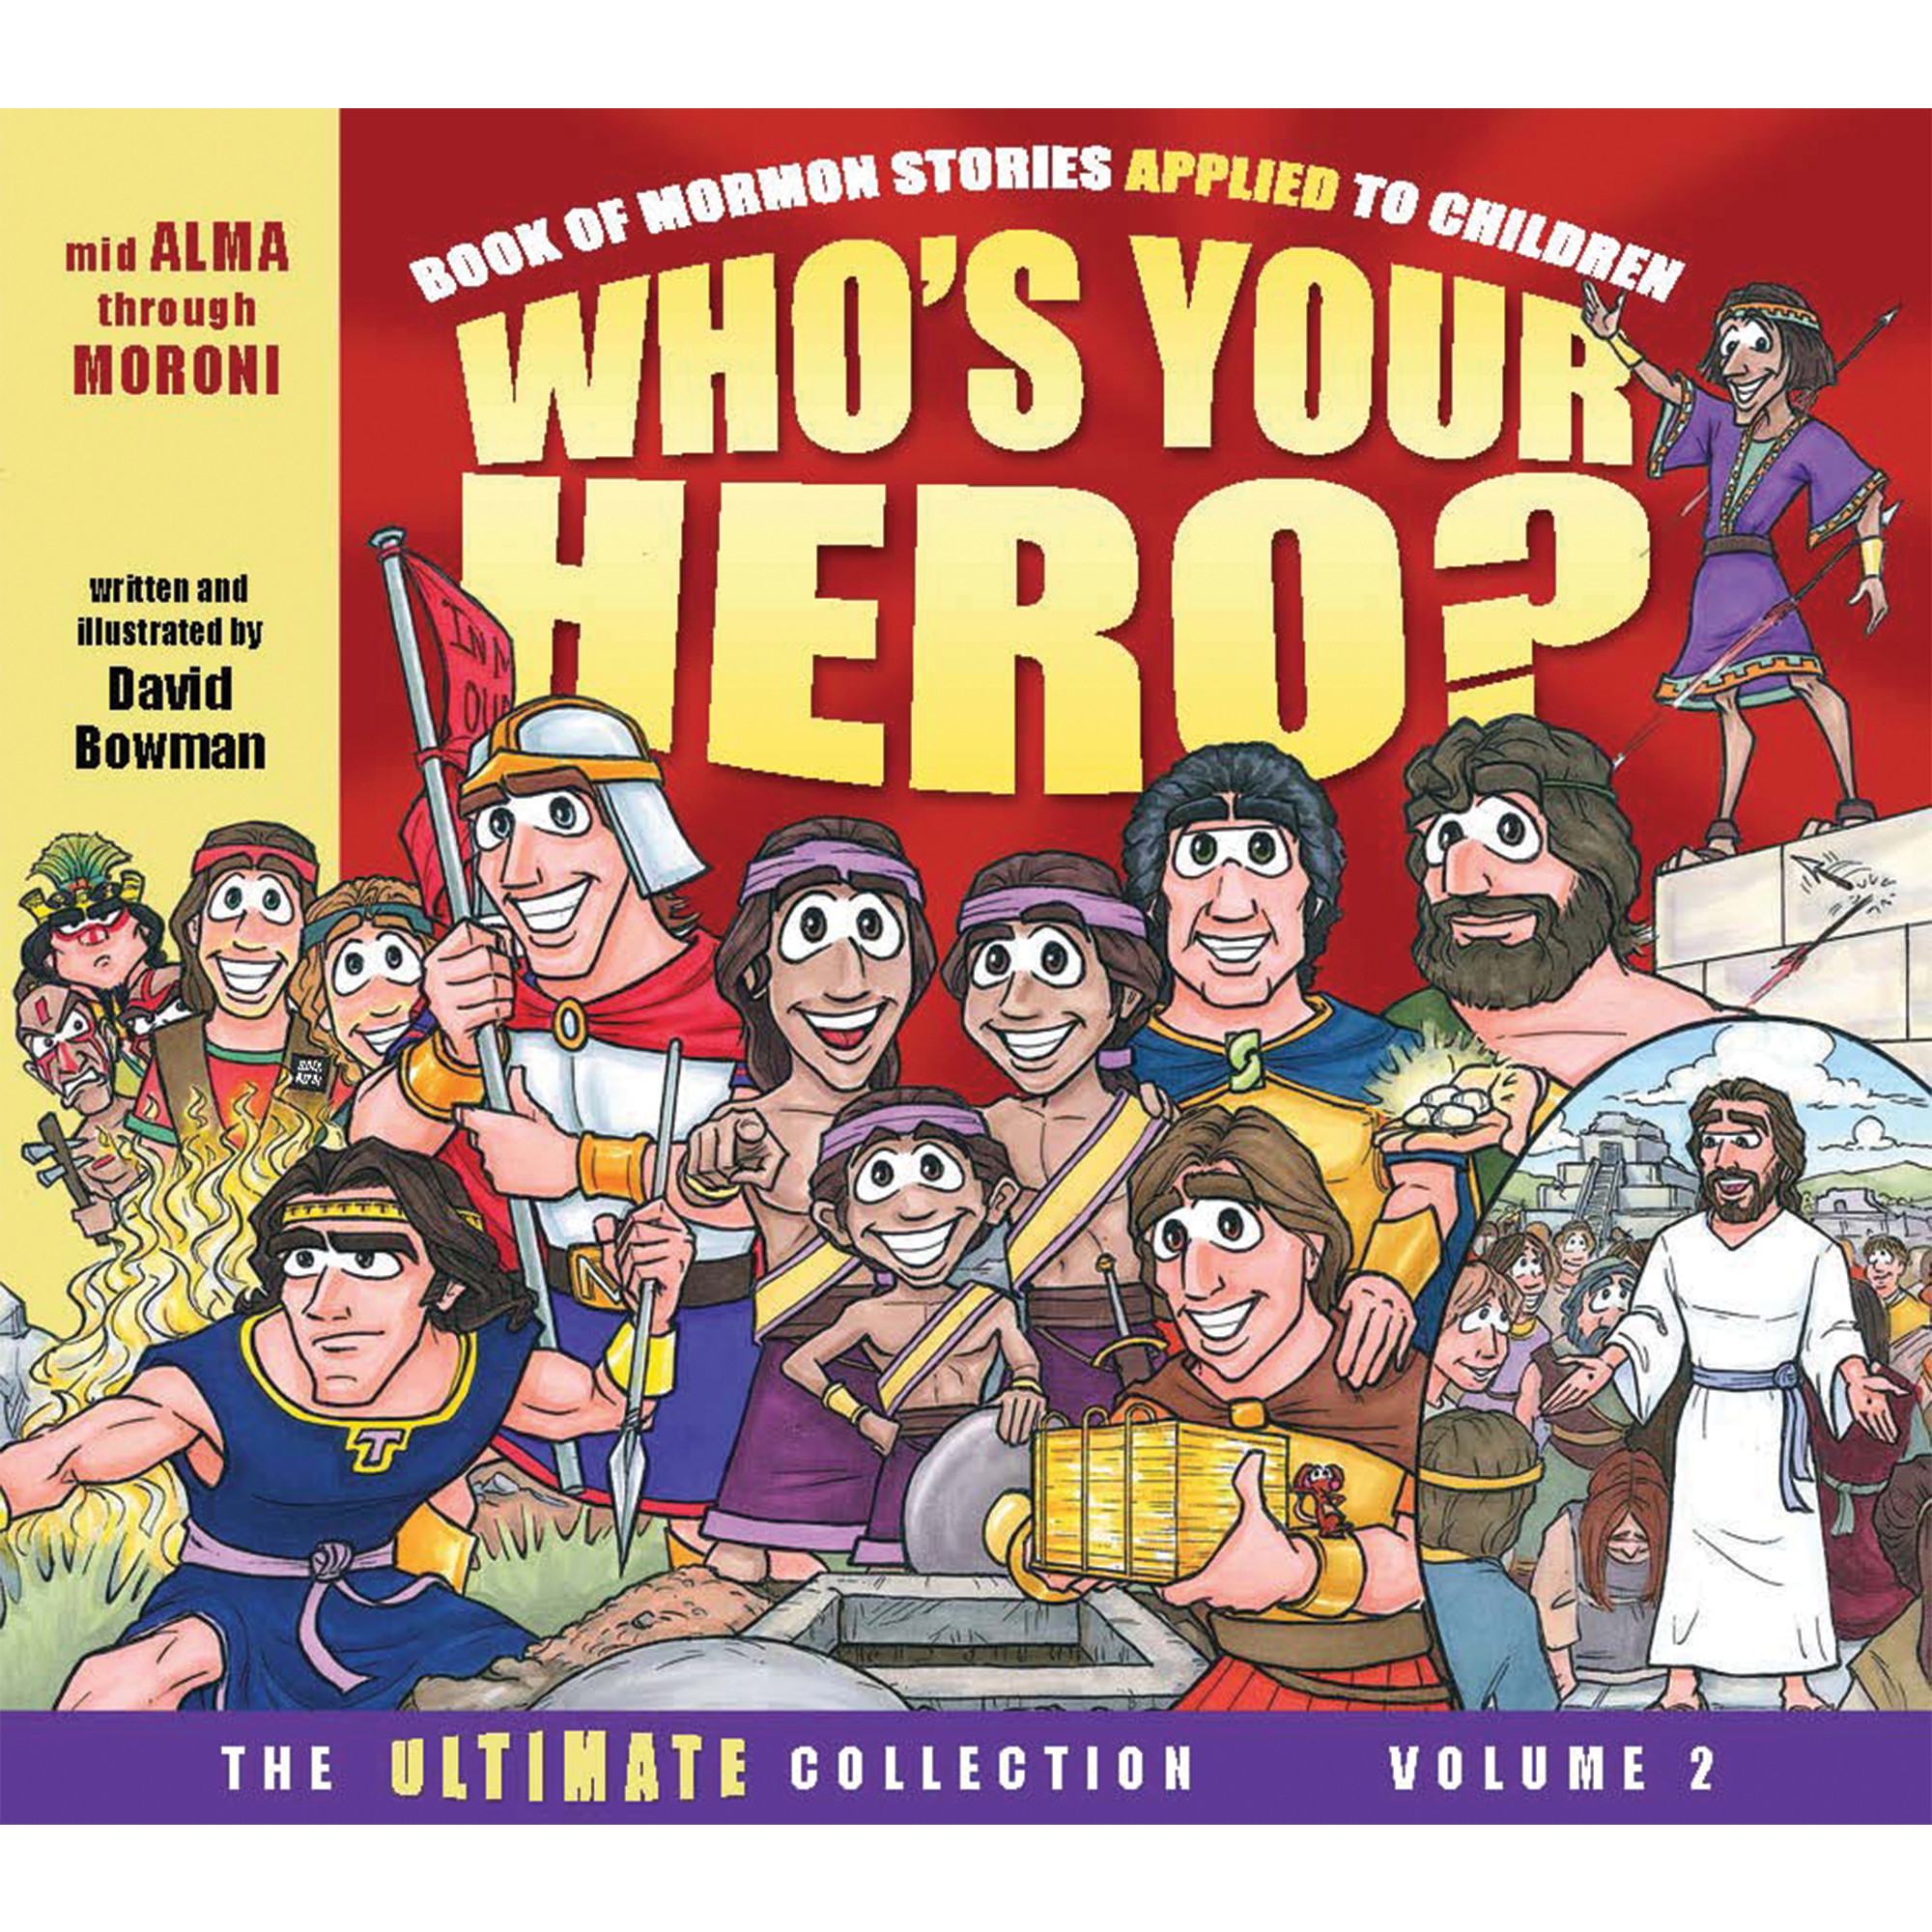 “WHO’S YOUR HERO?” Volume 2